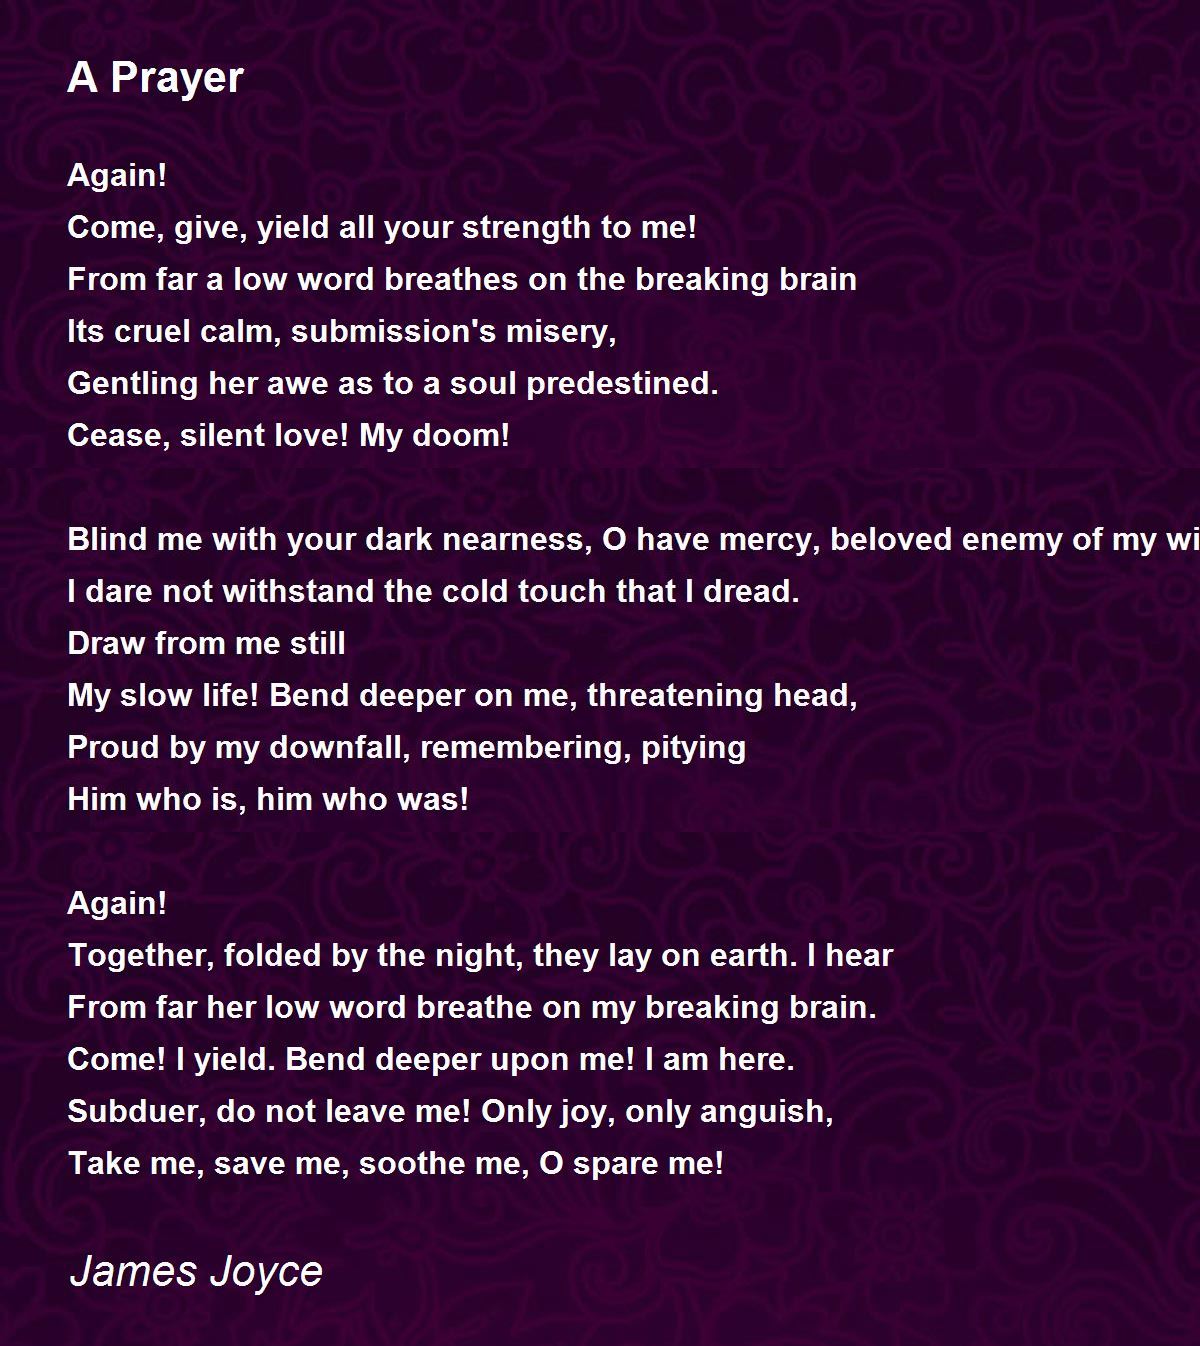 A Prayer Poem by James Joyce - Poem Hunter